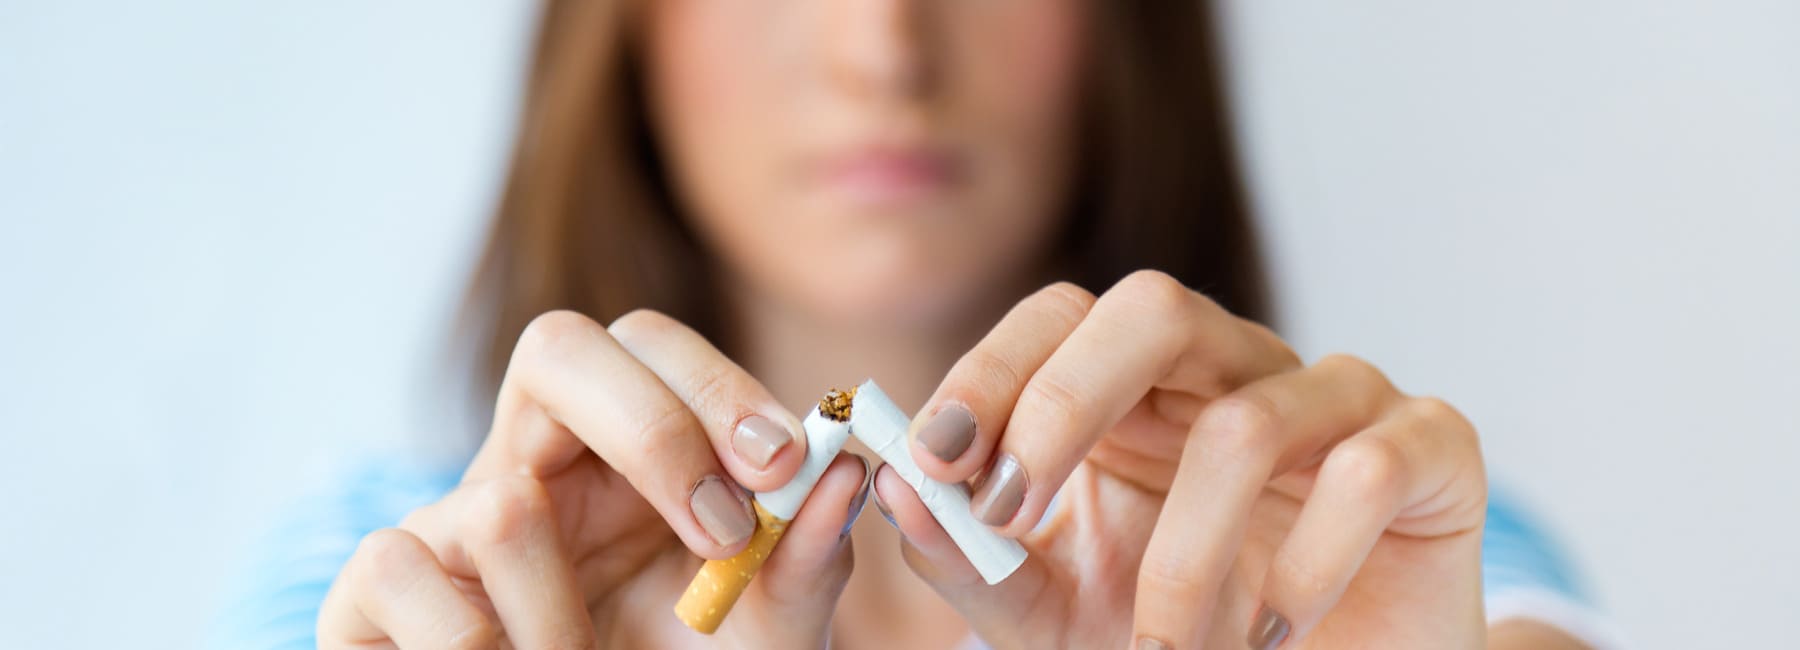 Почему употребление табака может увеличить ваш риск заражения коронавирусом?